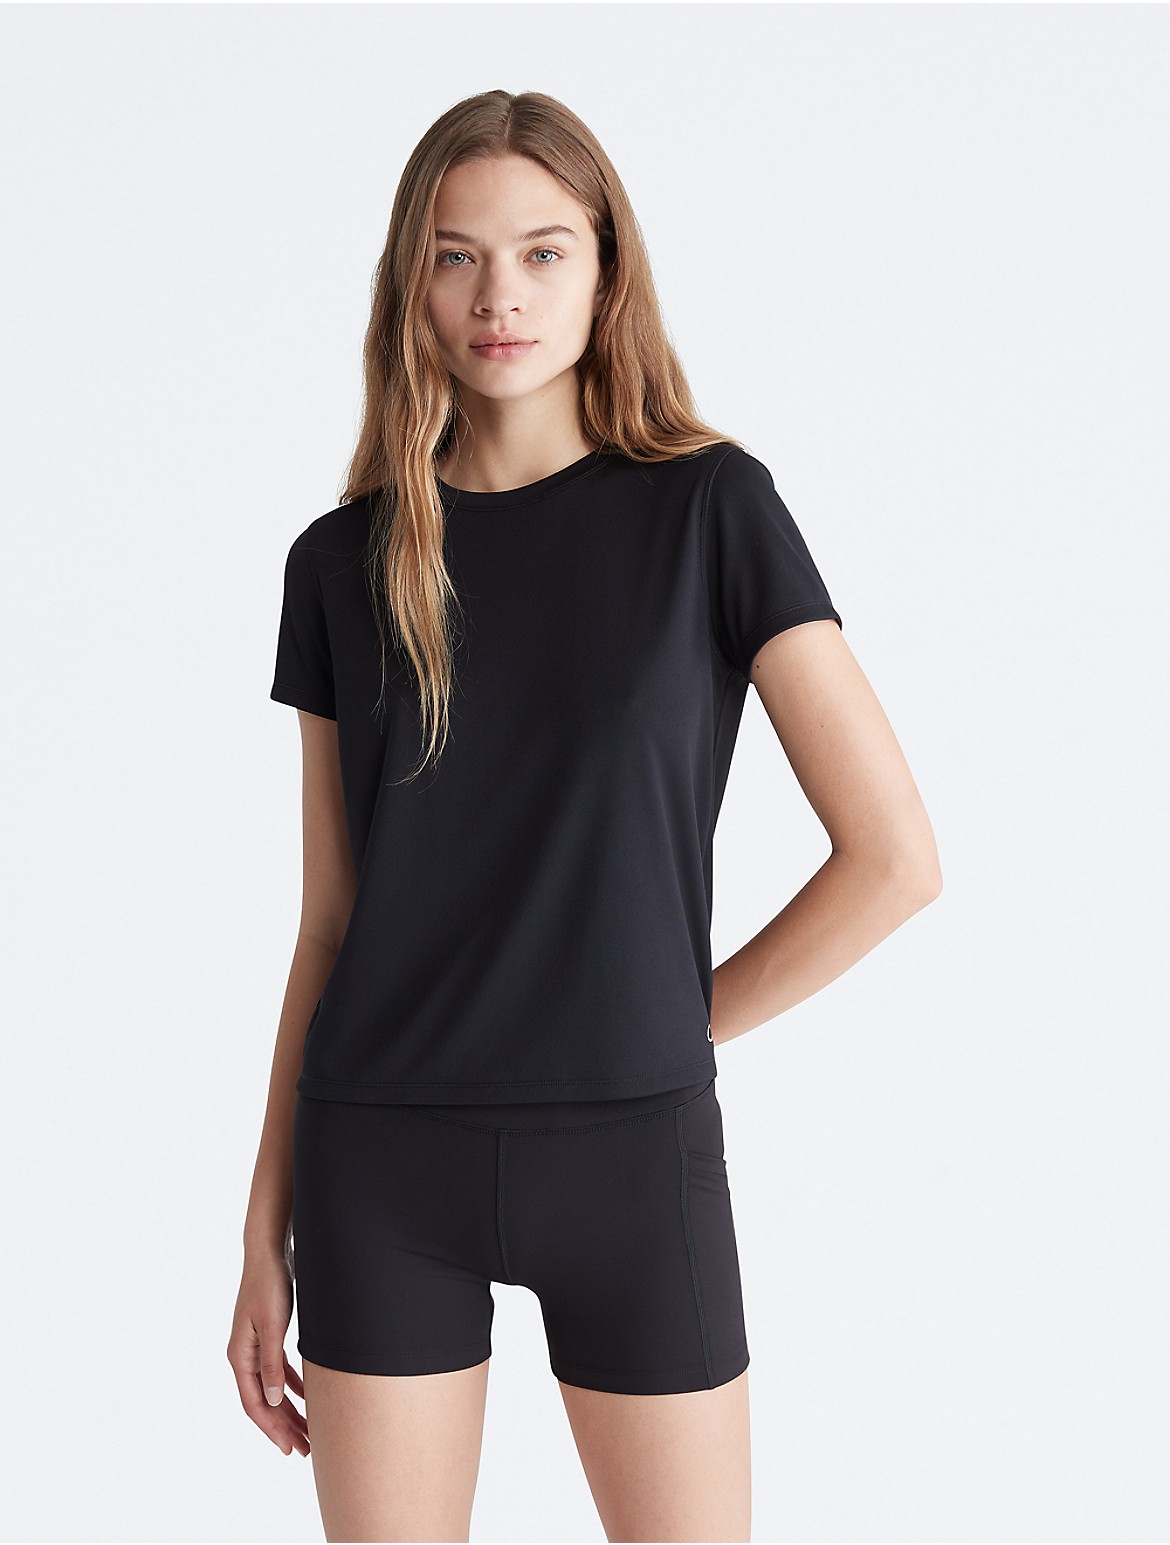 Calvin Klein Women's Performance Tech Pique T-Shirt - Black - XL